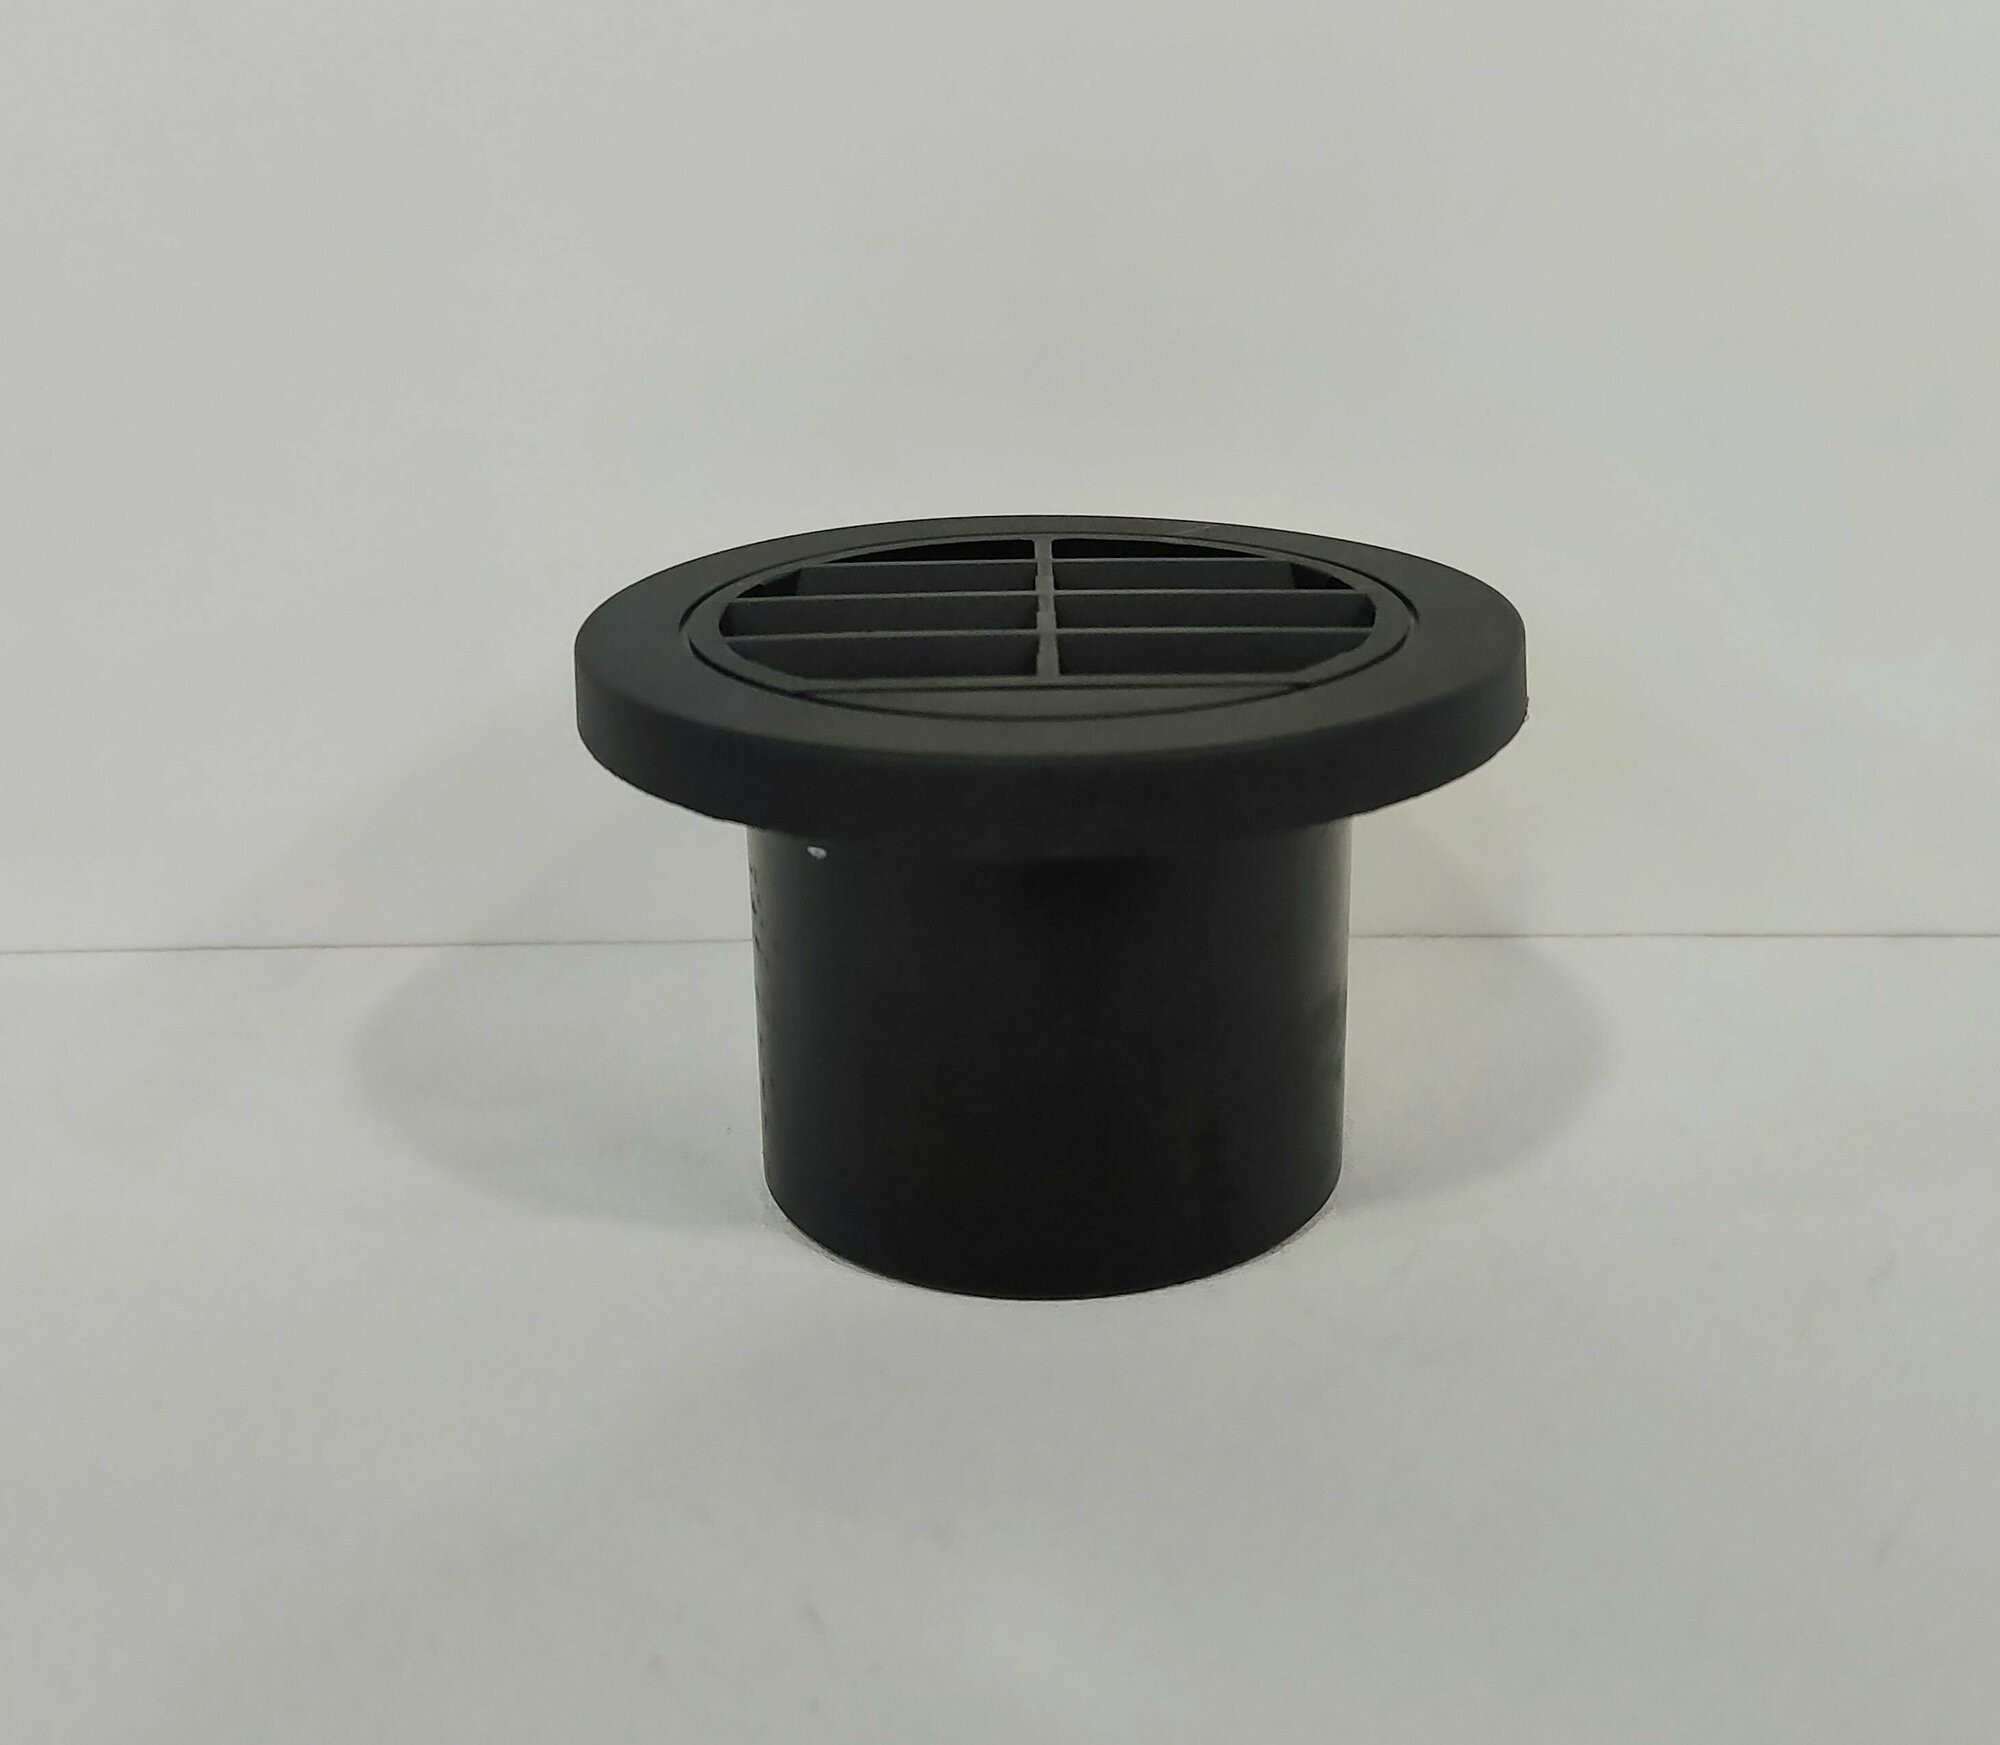 Дефлектор поворотный плоский (60 мм) для автономного воздушного отопителя тосольной печки - арт. 4494